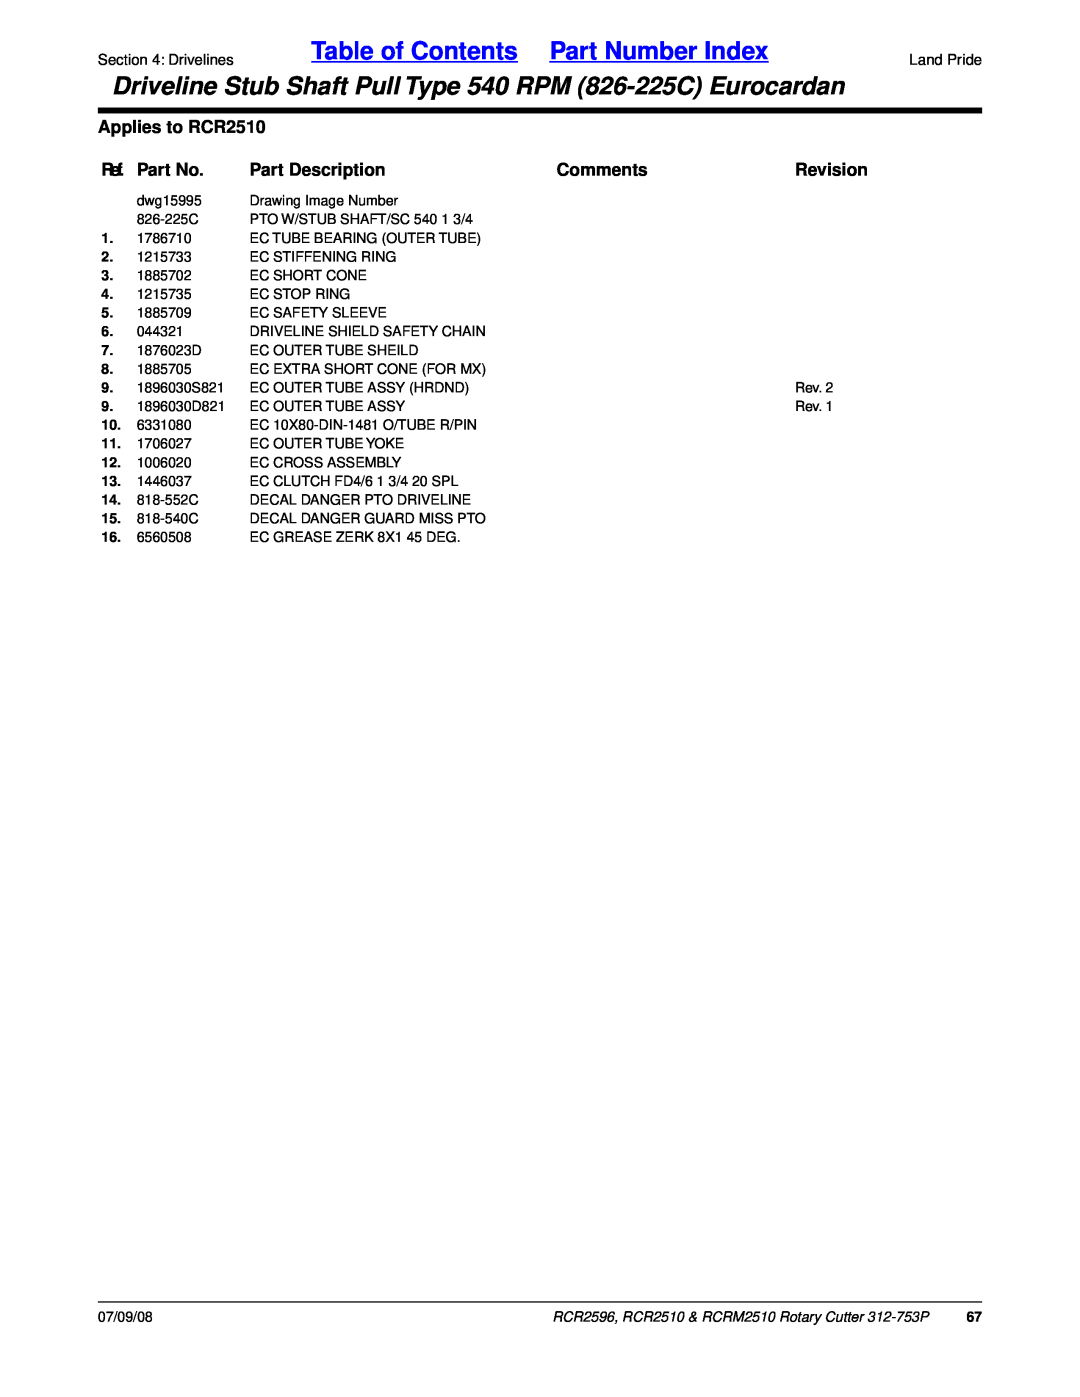 Land Pride RCRM2510 Table of Contents Part Number Index, Applies to RCR2510, Ref. Part No, Part Description, Comments 